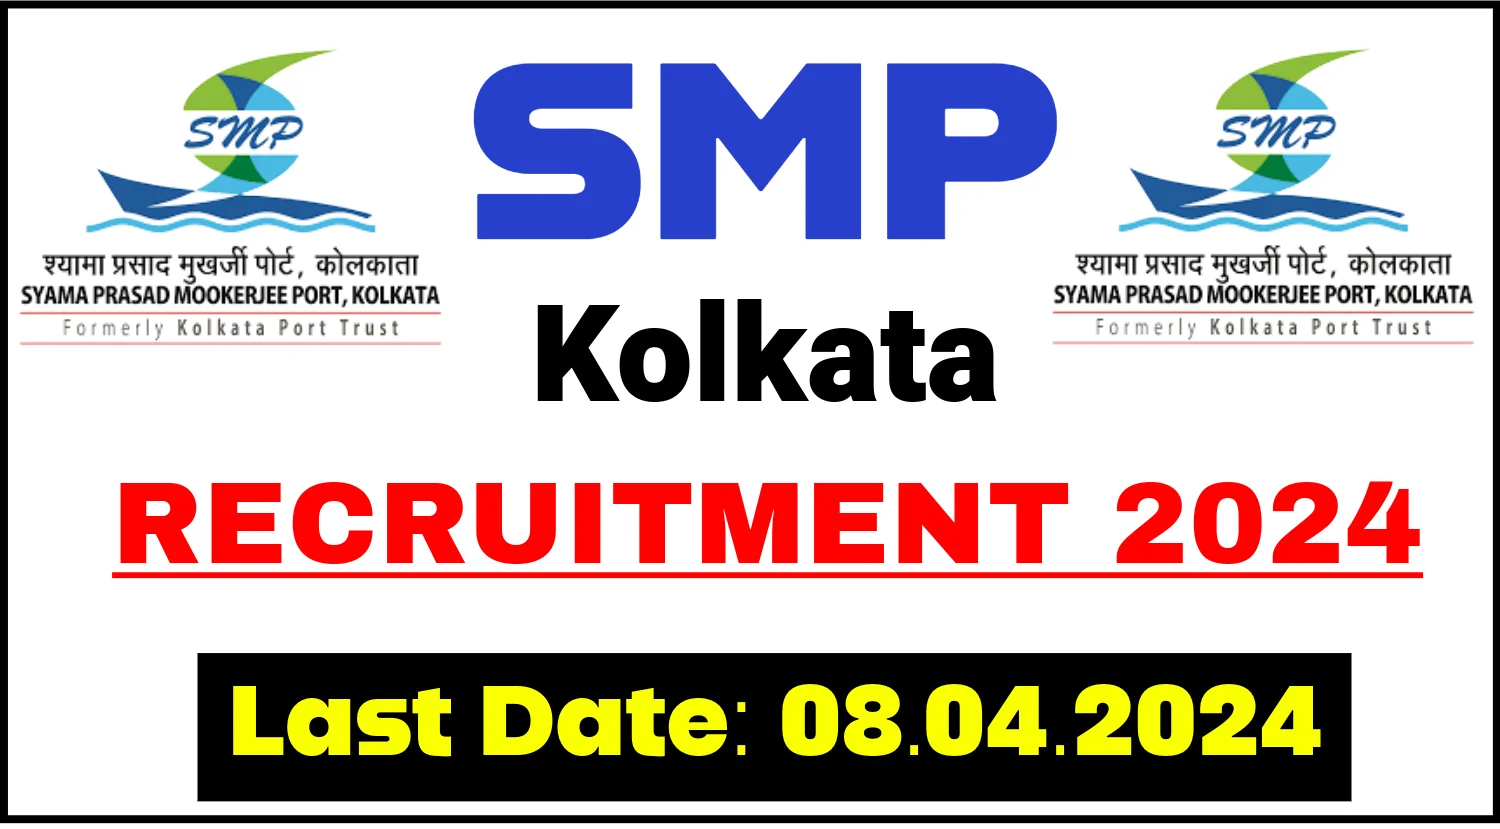 SMP Kolkata Recruitment 2024